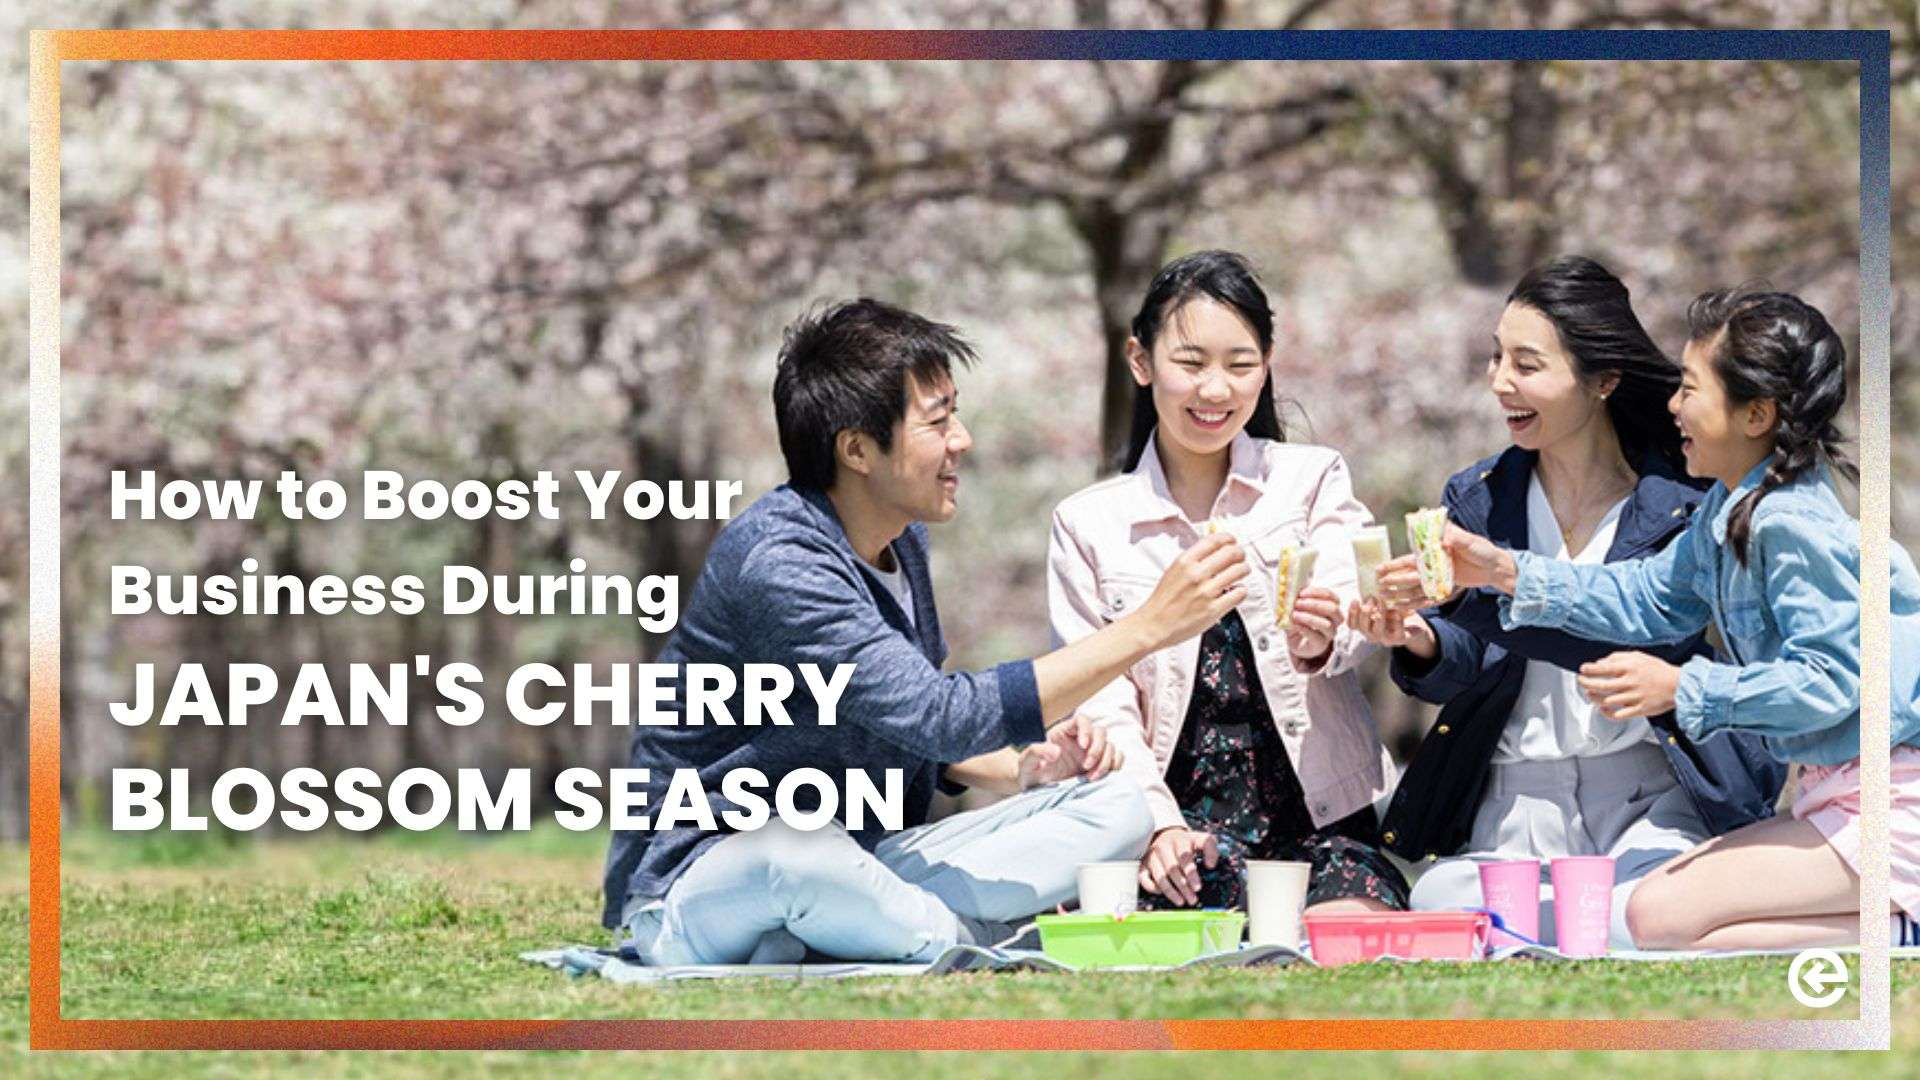 일본의 벚꽃 시즌에 비즈니스를 활성화하는 방법은?